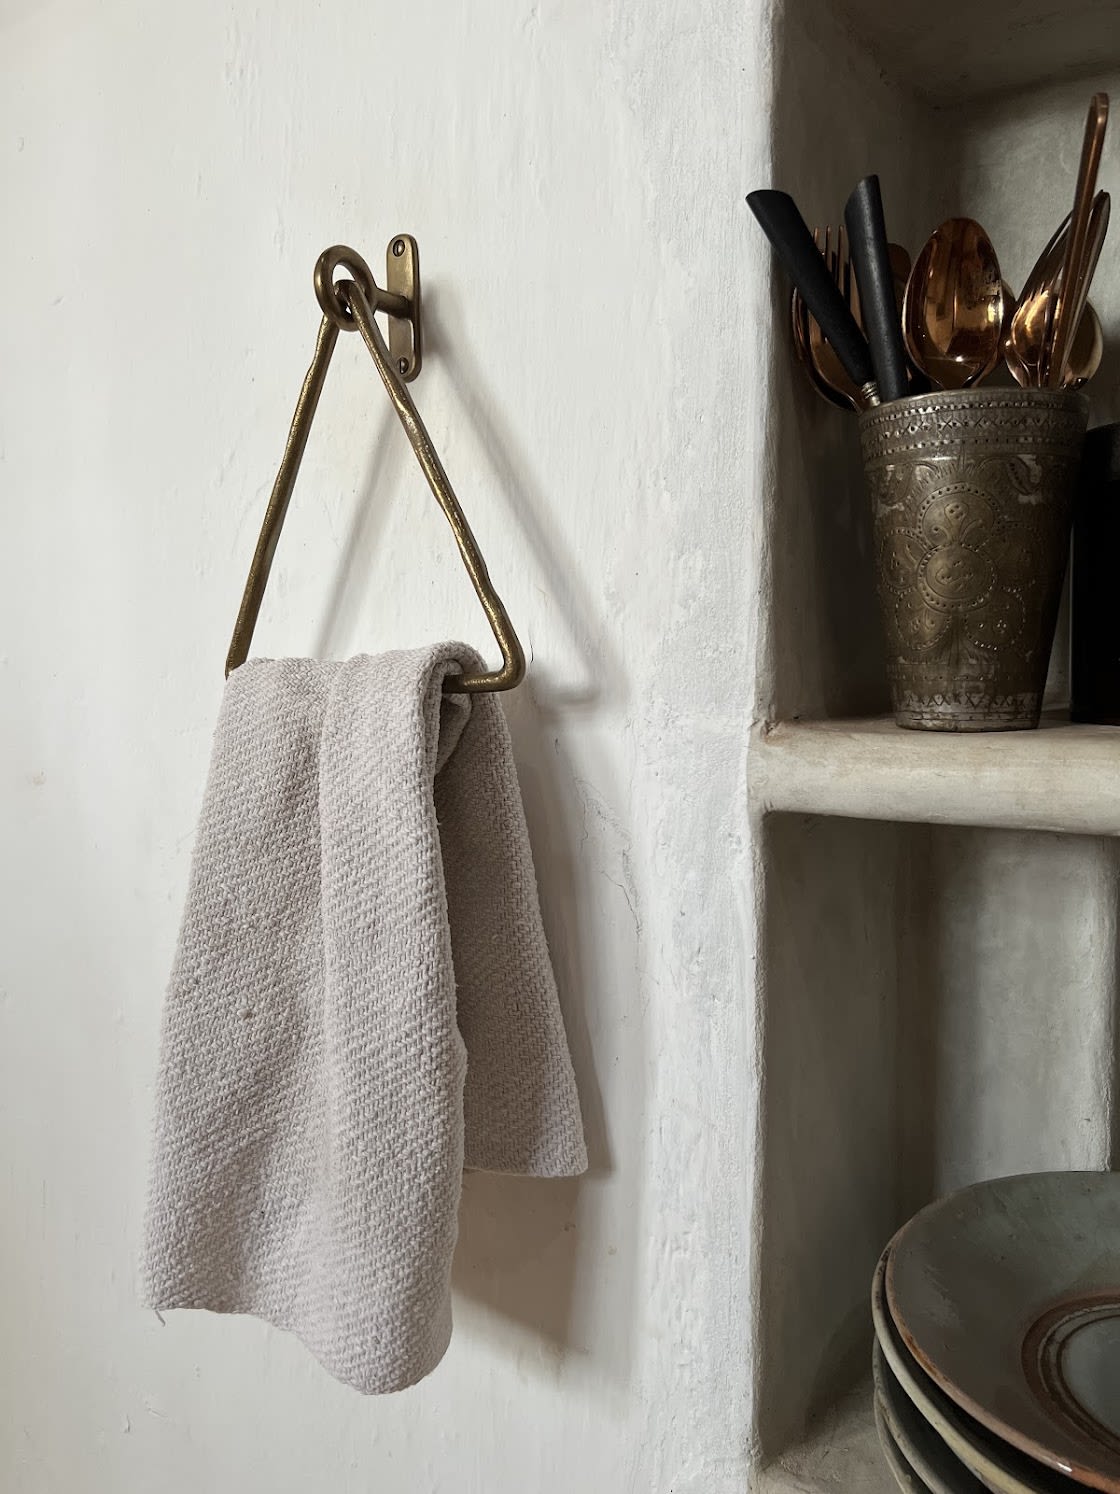 DIY Wooden Paper Towel Holder - The Nomad Studio